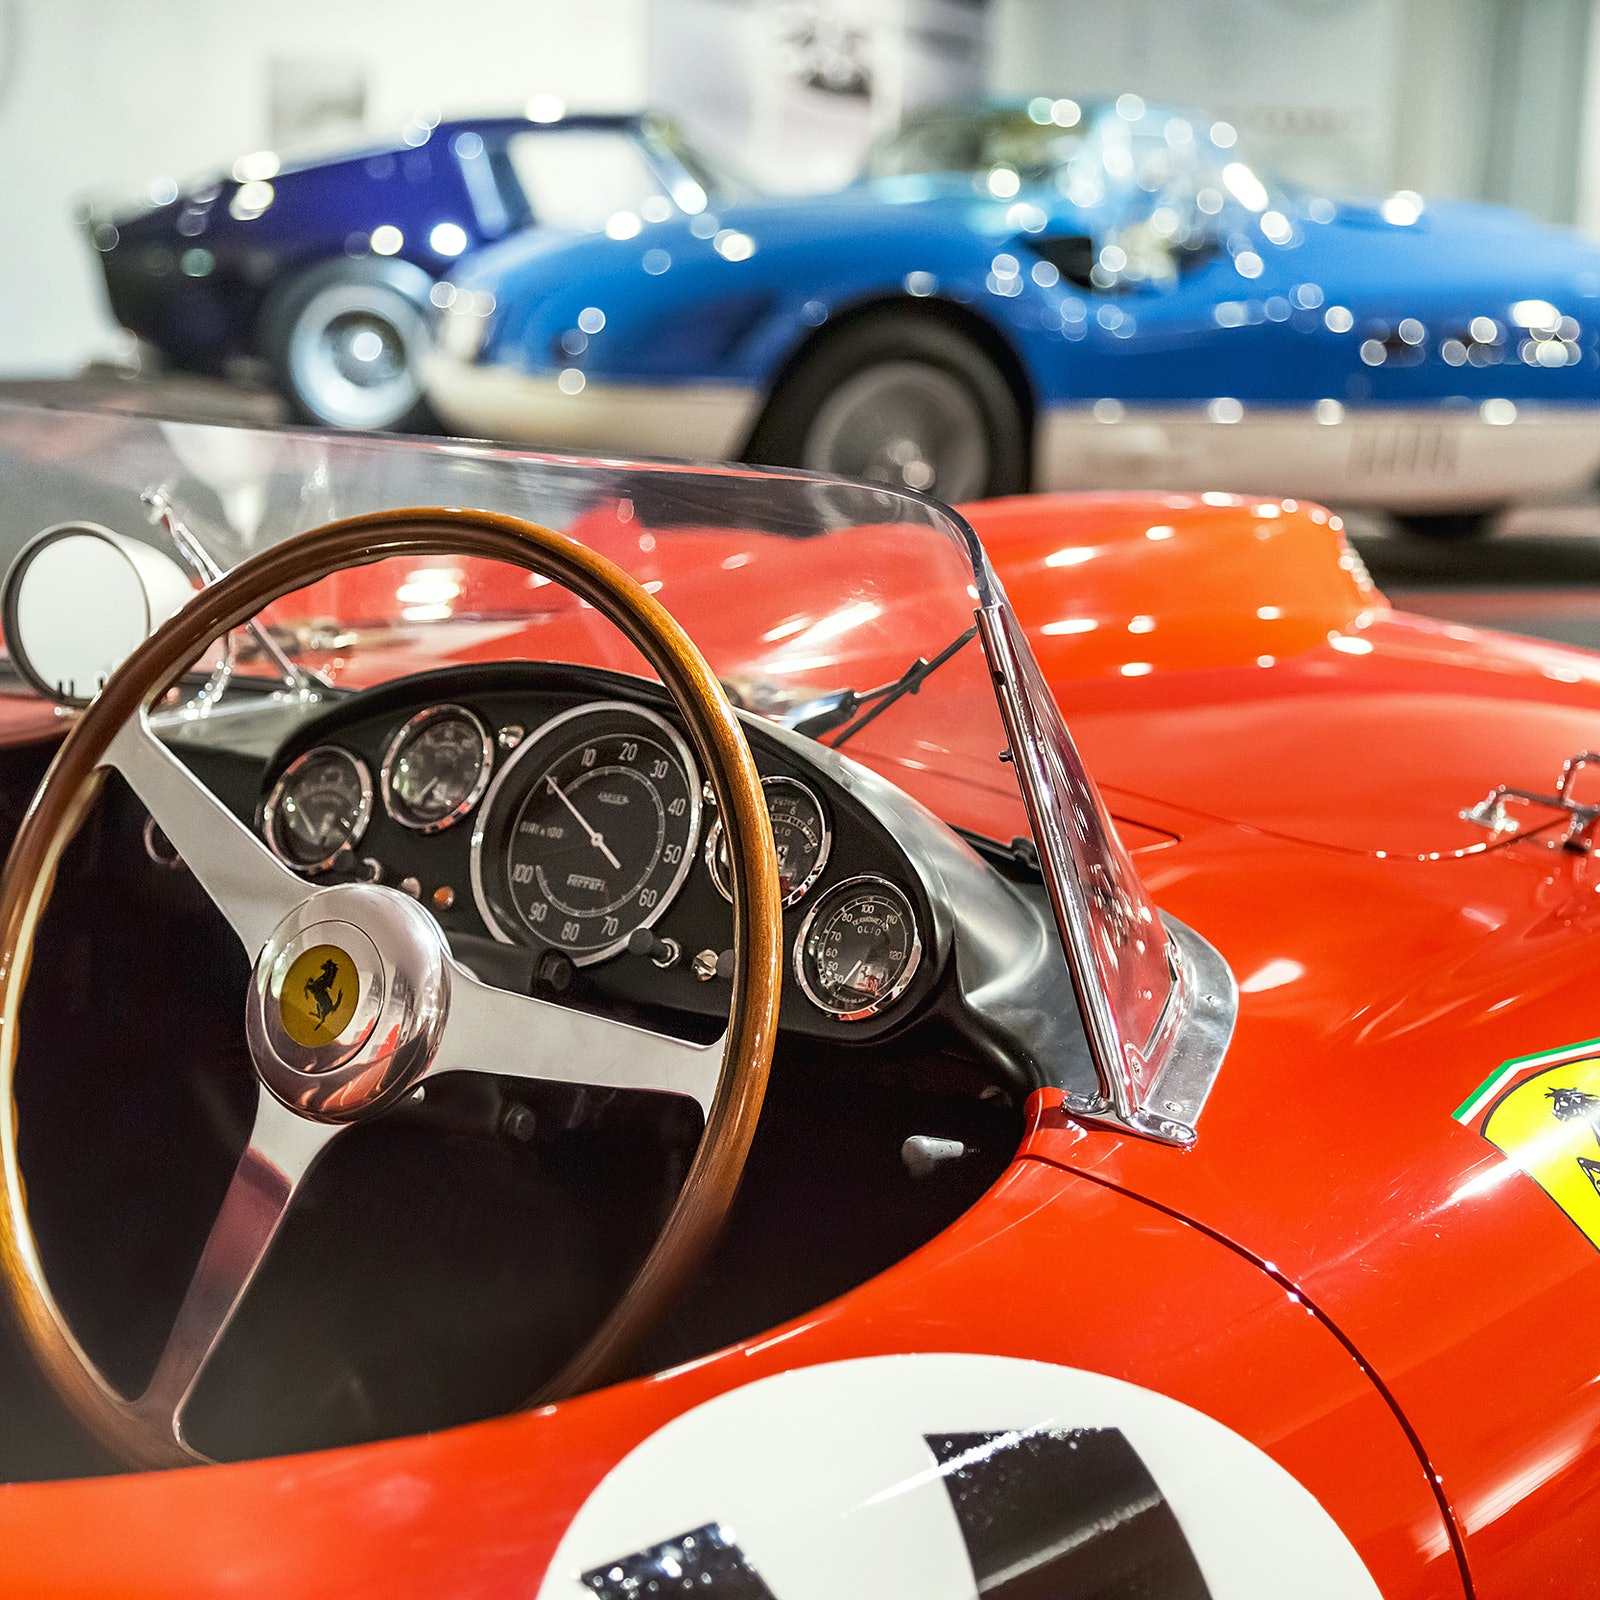 Ferrari Experience (Ferrari Museum & Enzo Ferrari Museum) in Italy